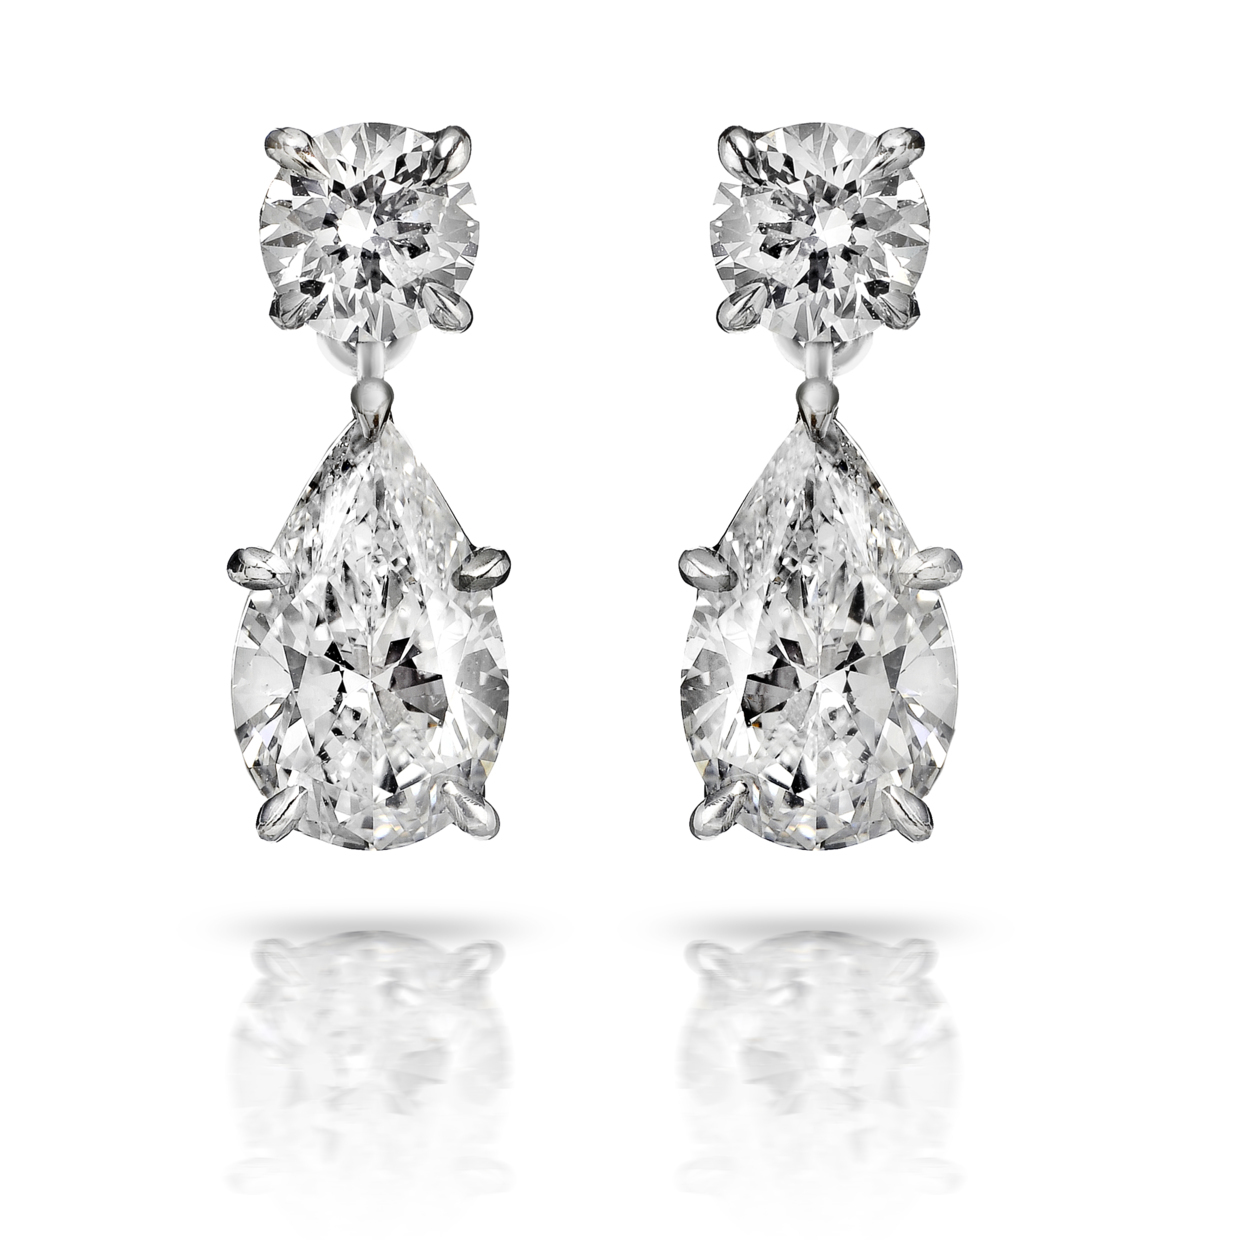 Buy Pear Shape Diamond Drop Earrings by SRWNYC on OpenSky